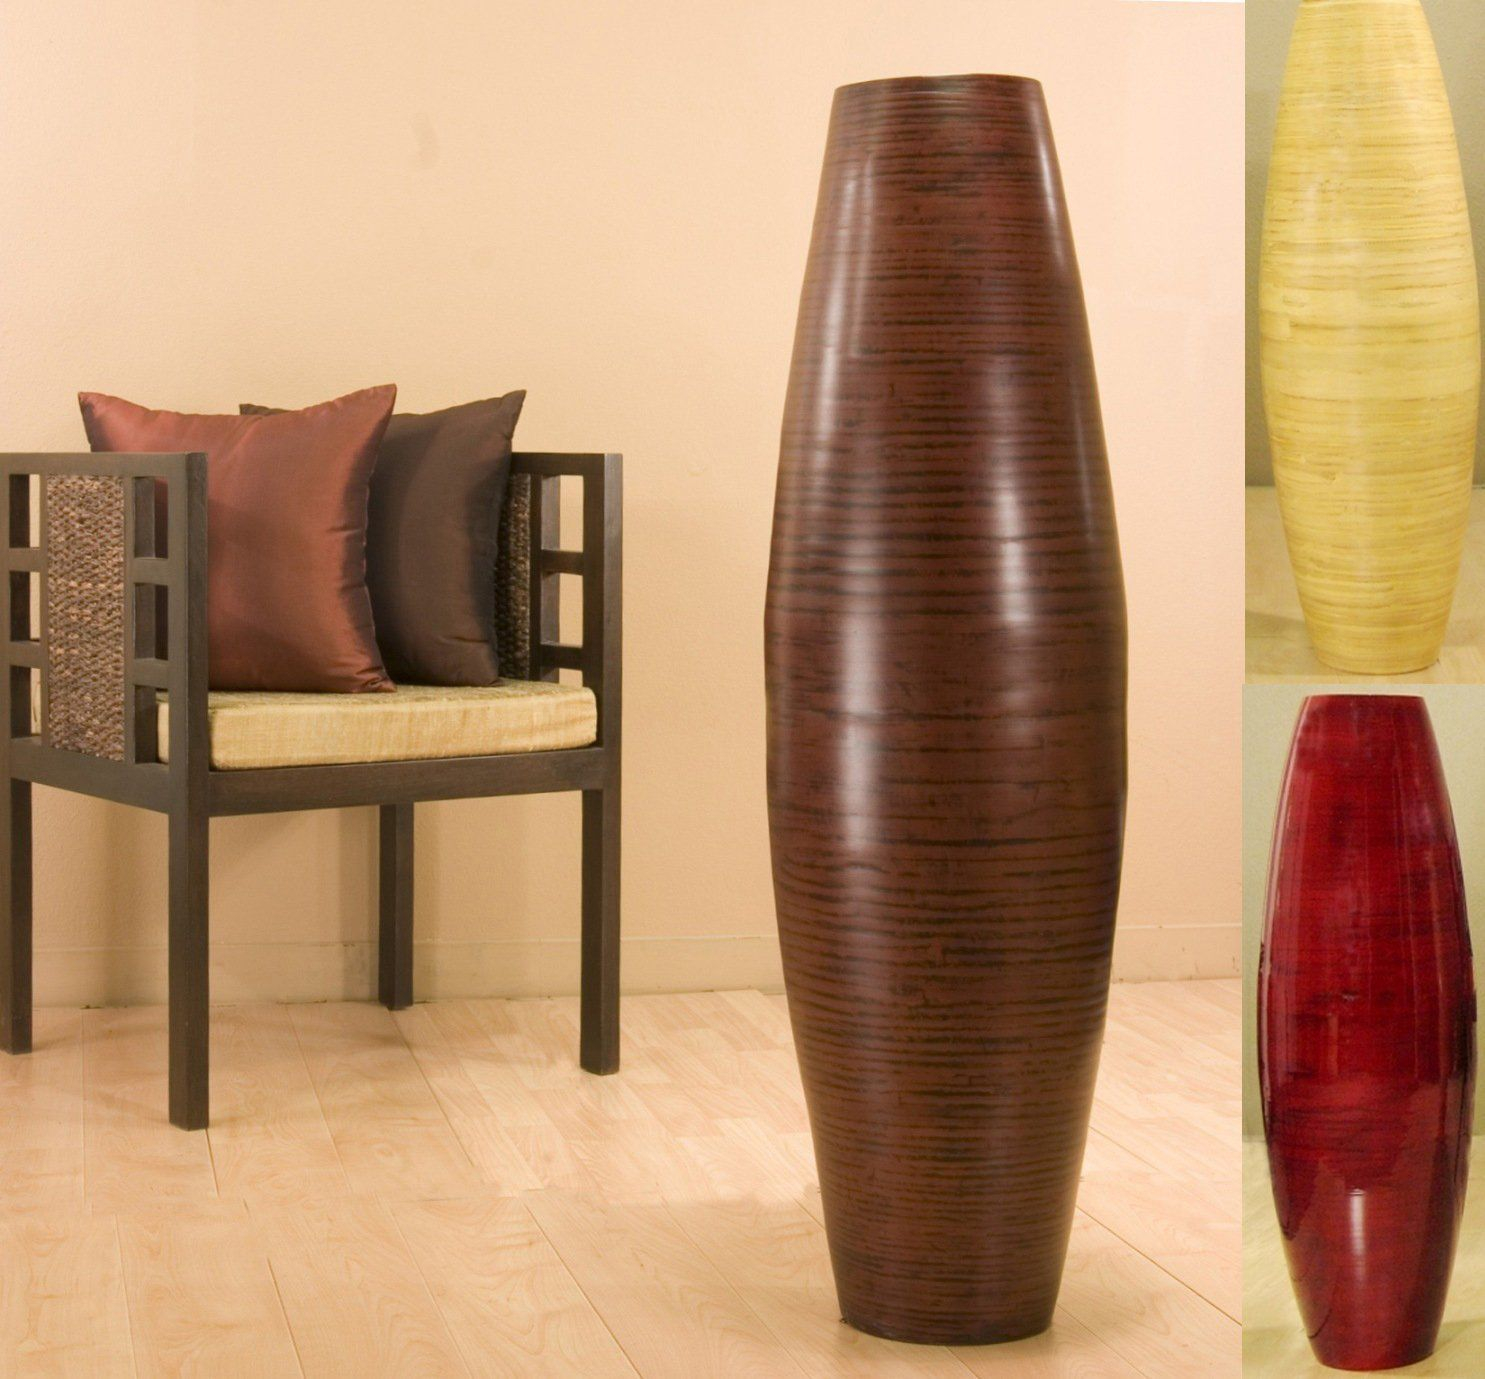 48 Inch Tall Floor Vase Con Imgenes Decoracin De Unas intended for dimensions 1485 X 1379